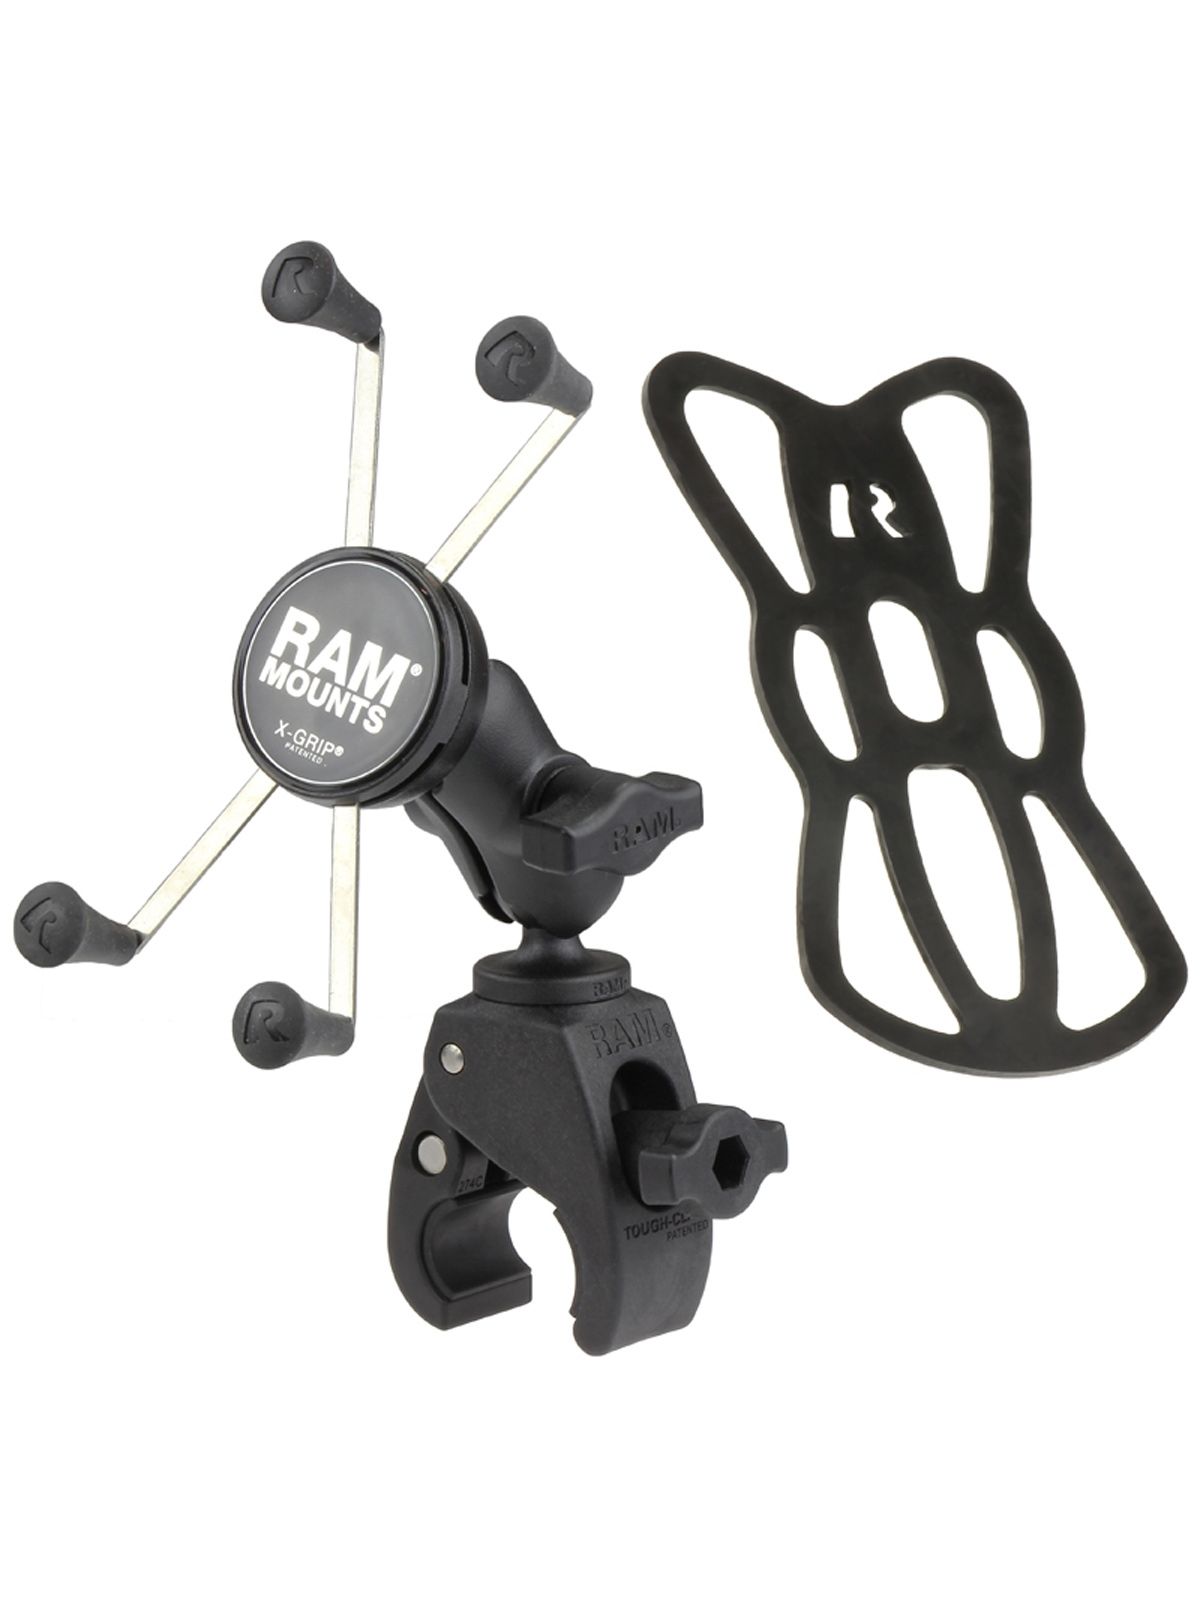 RAM Mounts X-Grip Klemm-Halterung für Smartphones bis 114,3 mm Breite - B-Kugel (1 Zoll), Tough-Claw klein (Durchmesser 15,9-29,0 mm), kurzer Verbindungsarm (ca. 60 mm)